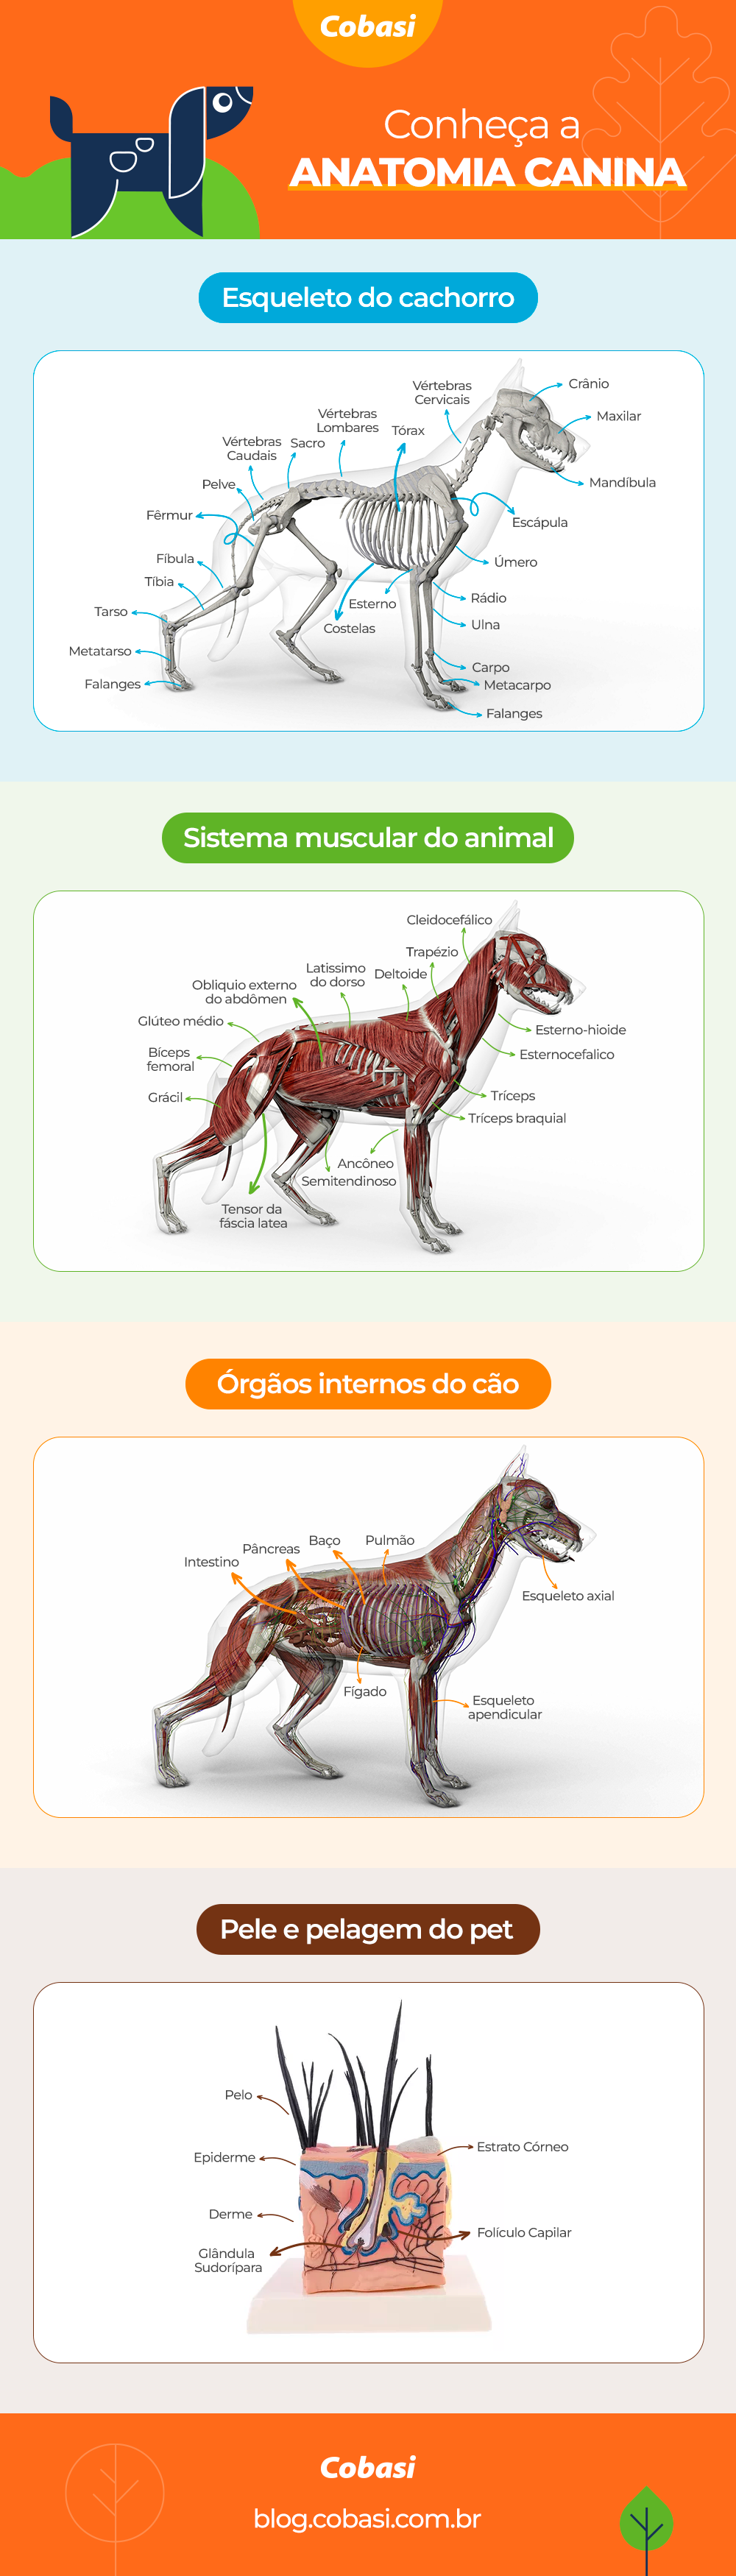 infográfico com as partes da anatomia canina